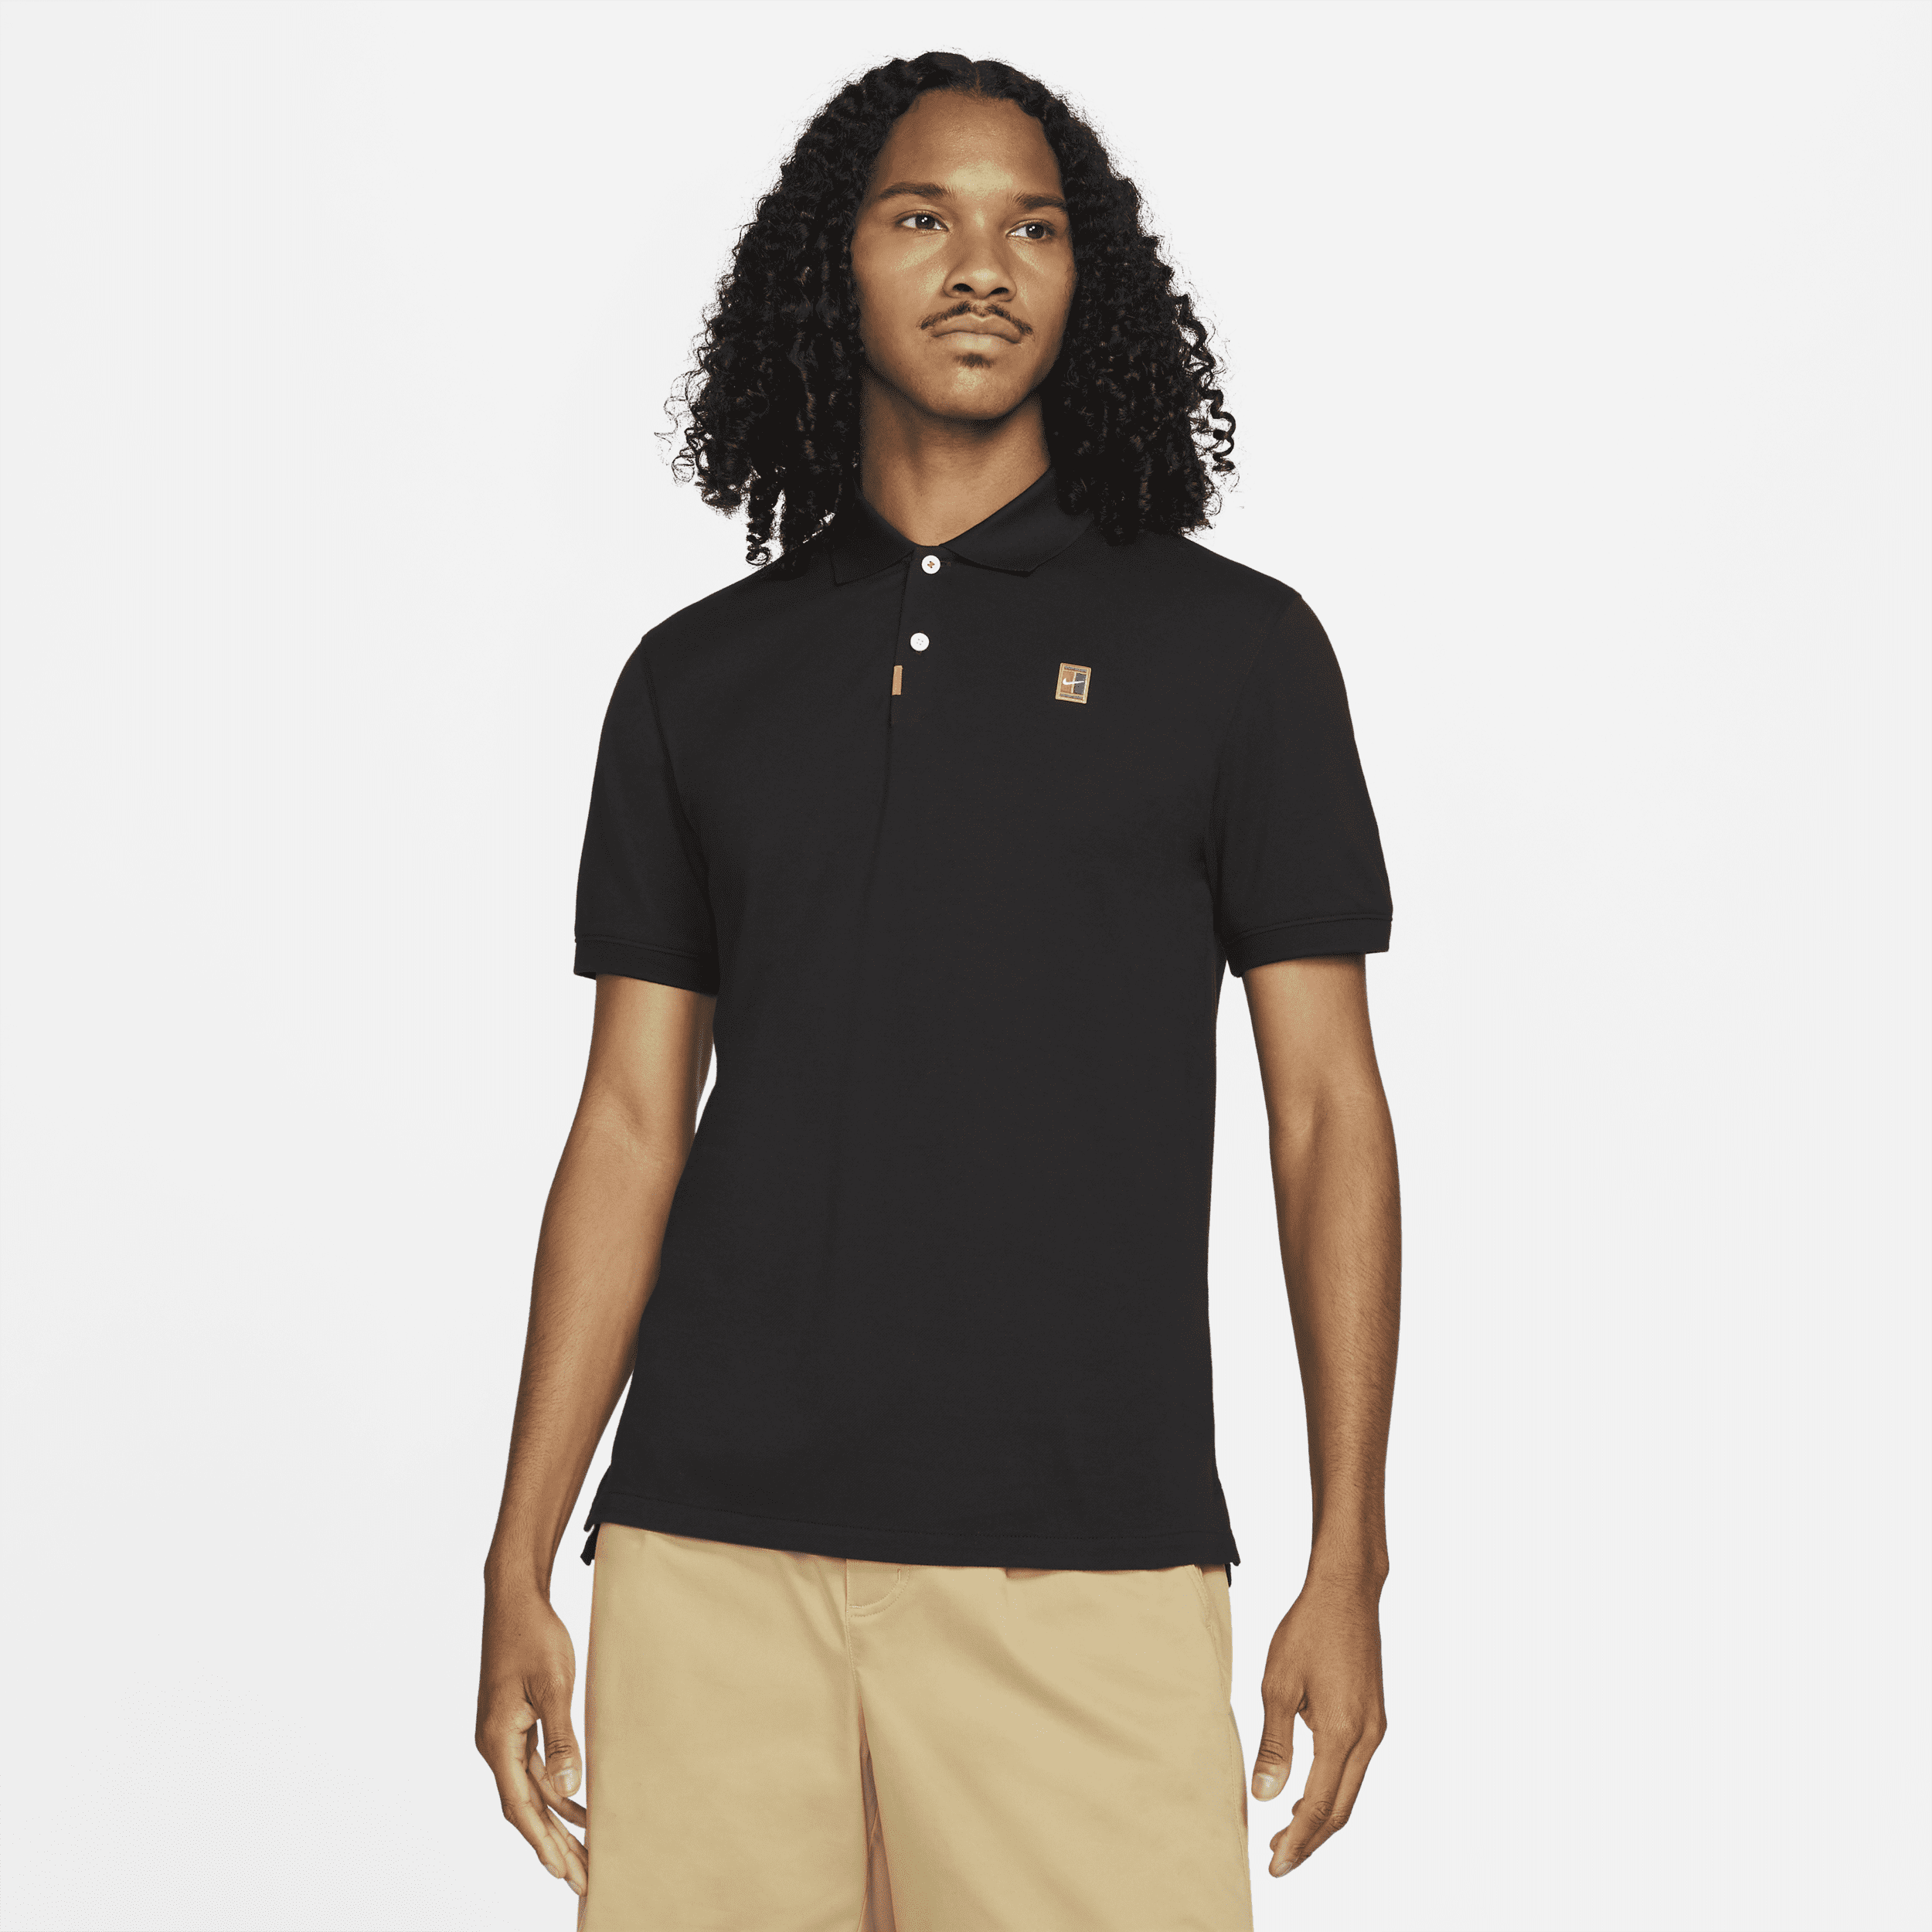 The Nike Polo med slank pasform til mænd - sort